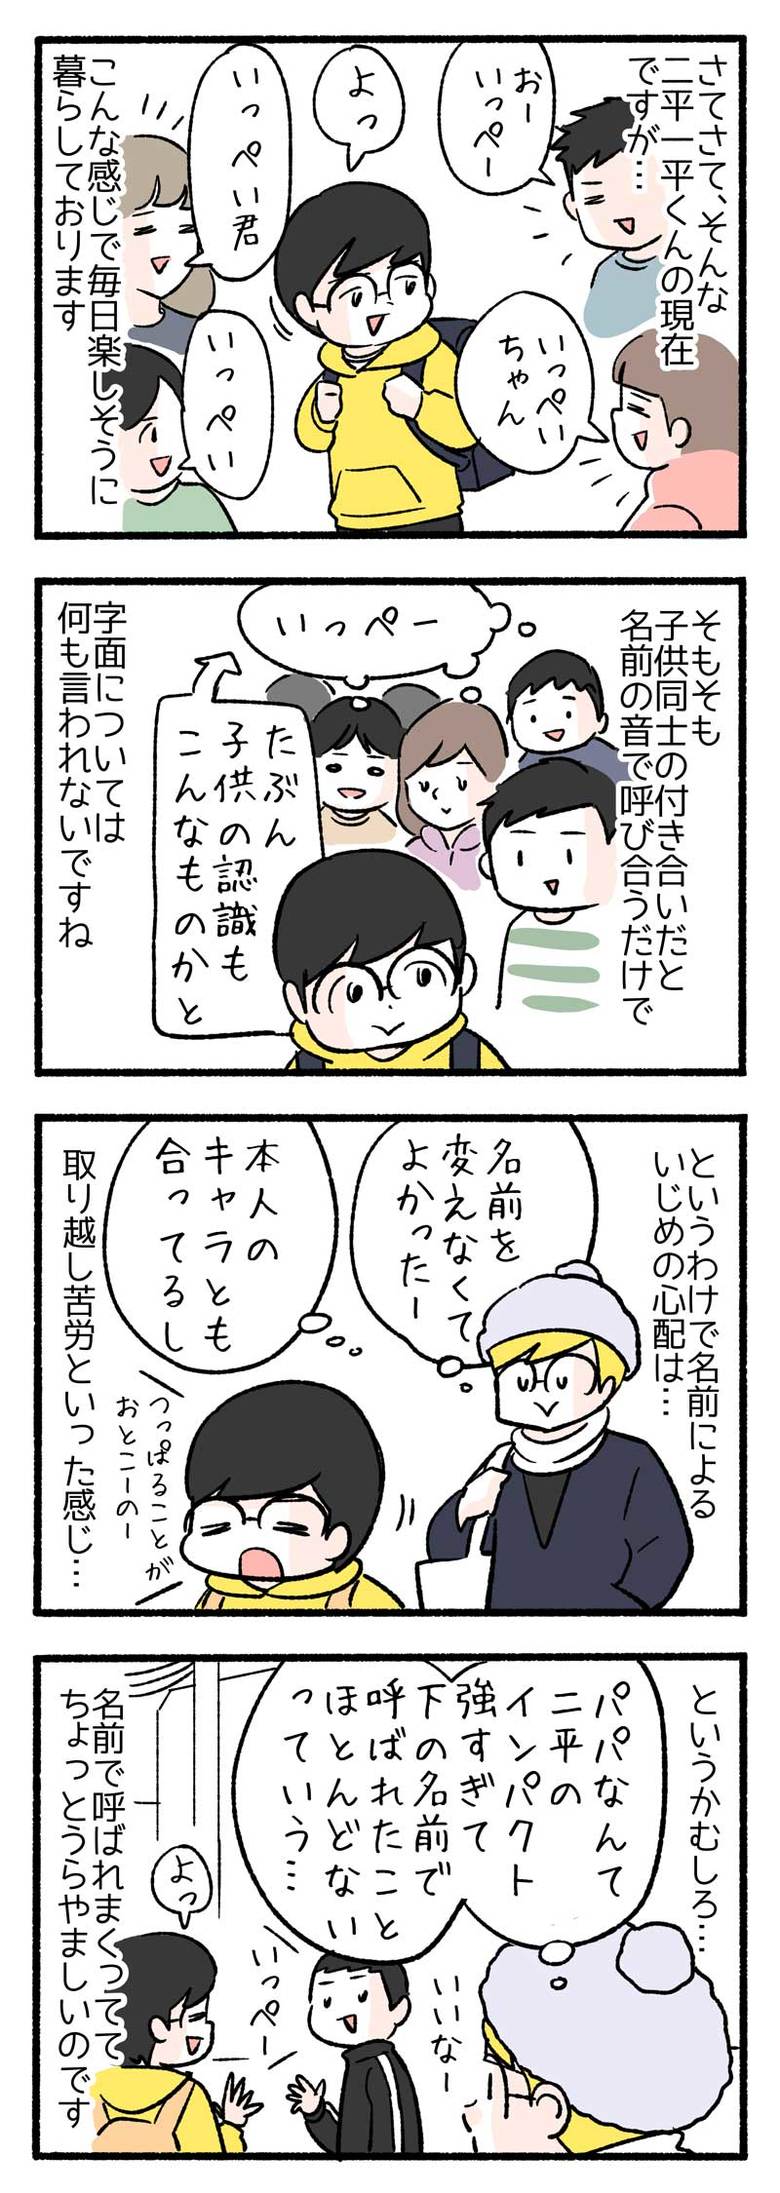 manga-nihipapa9-4